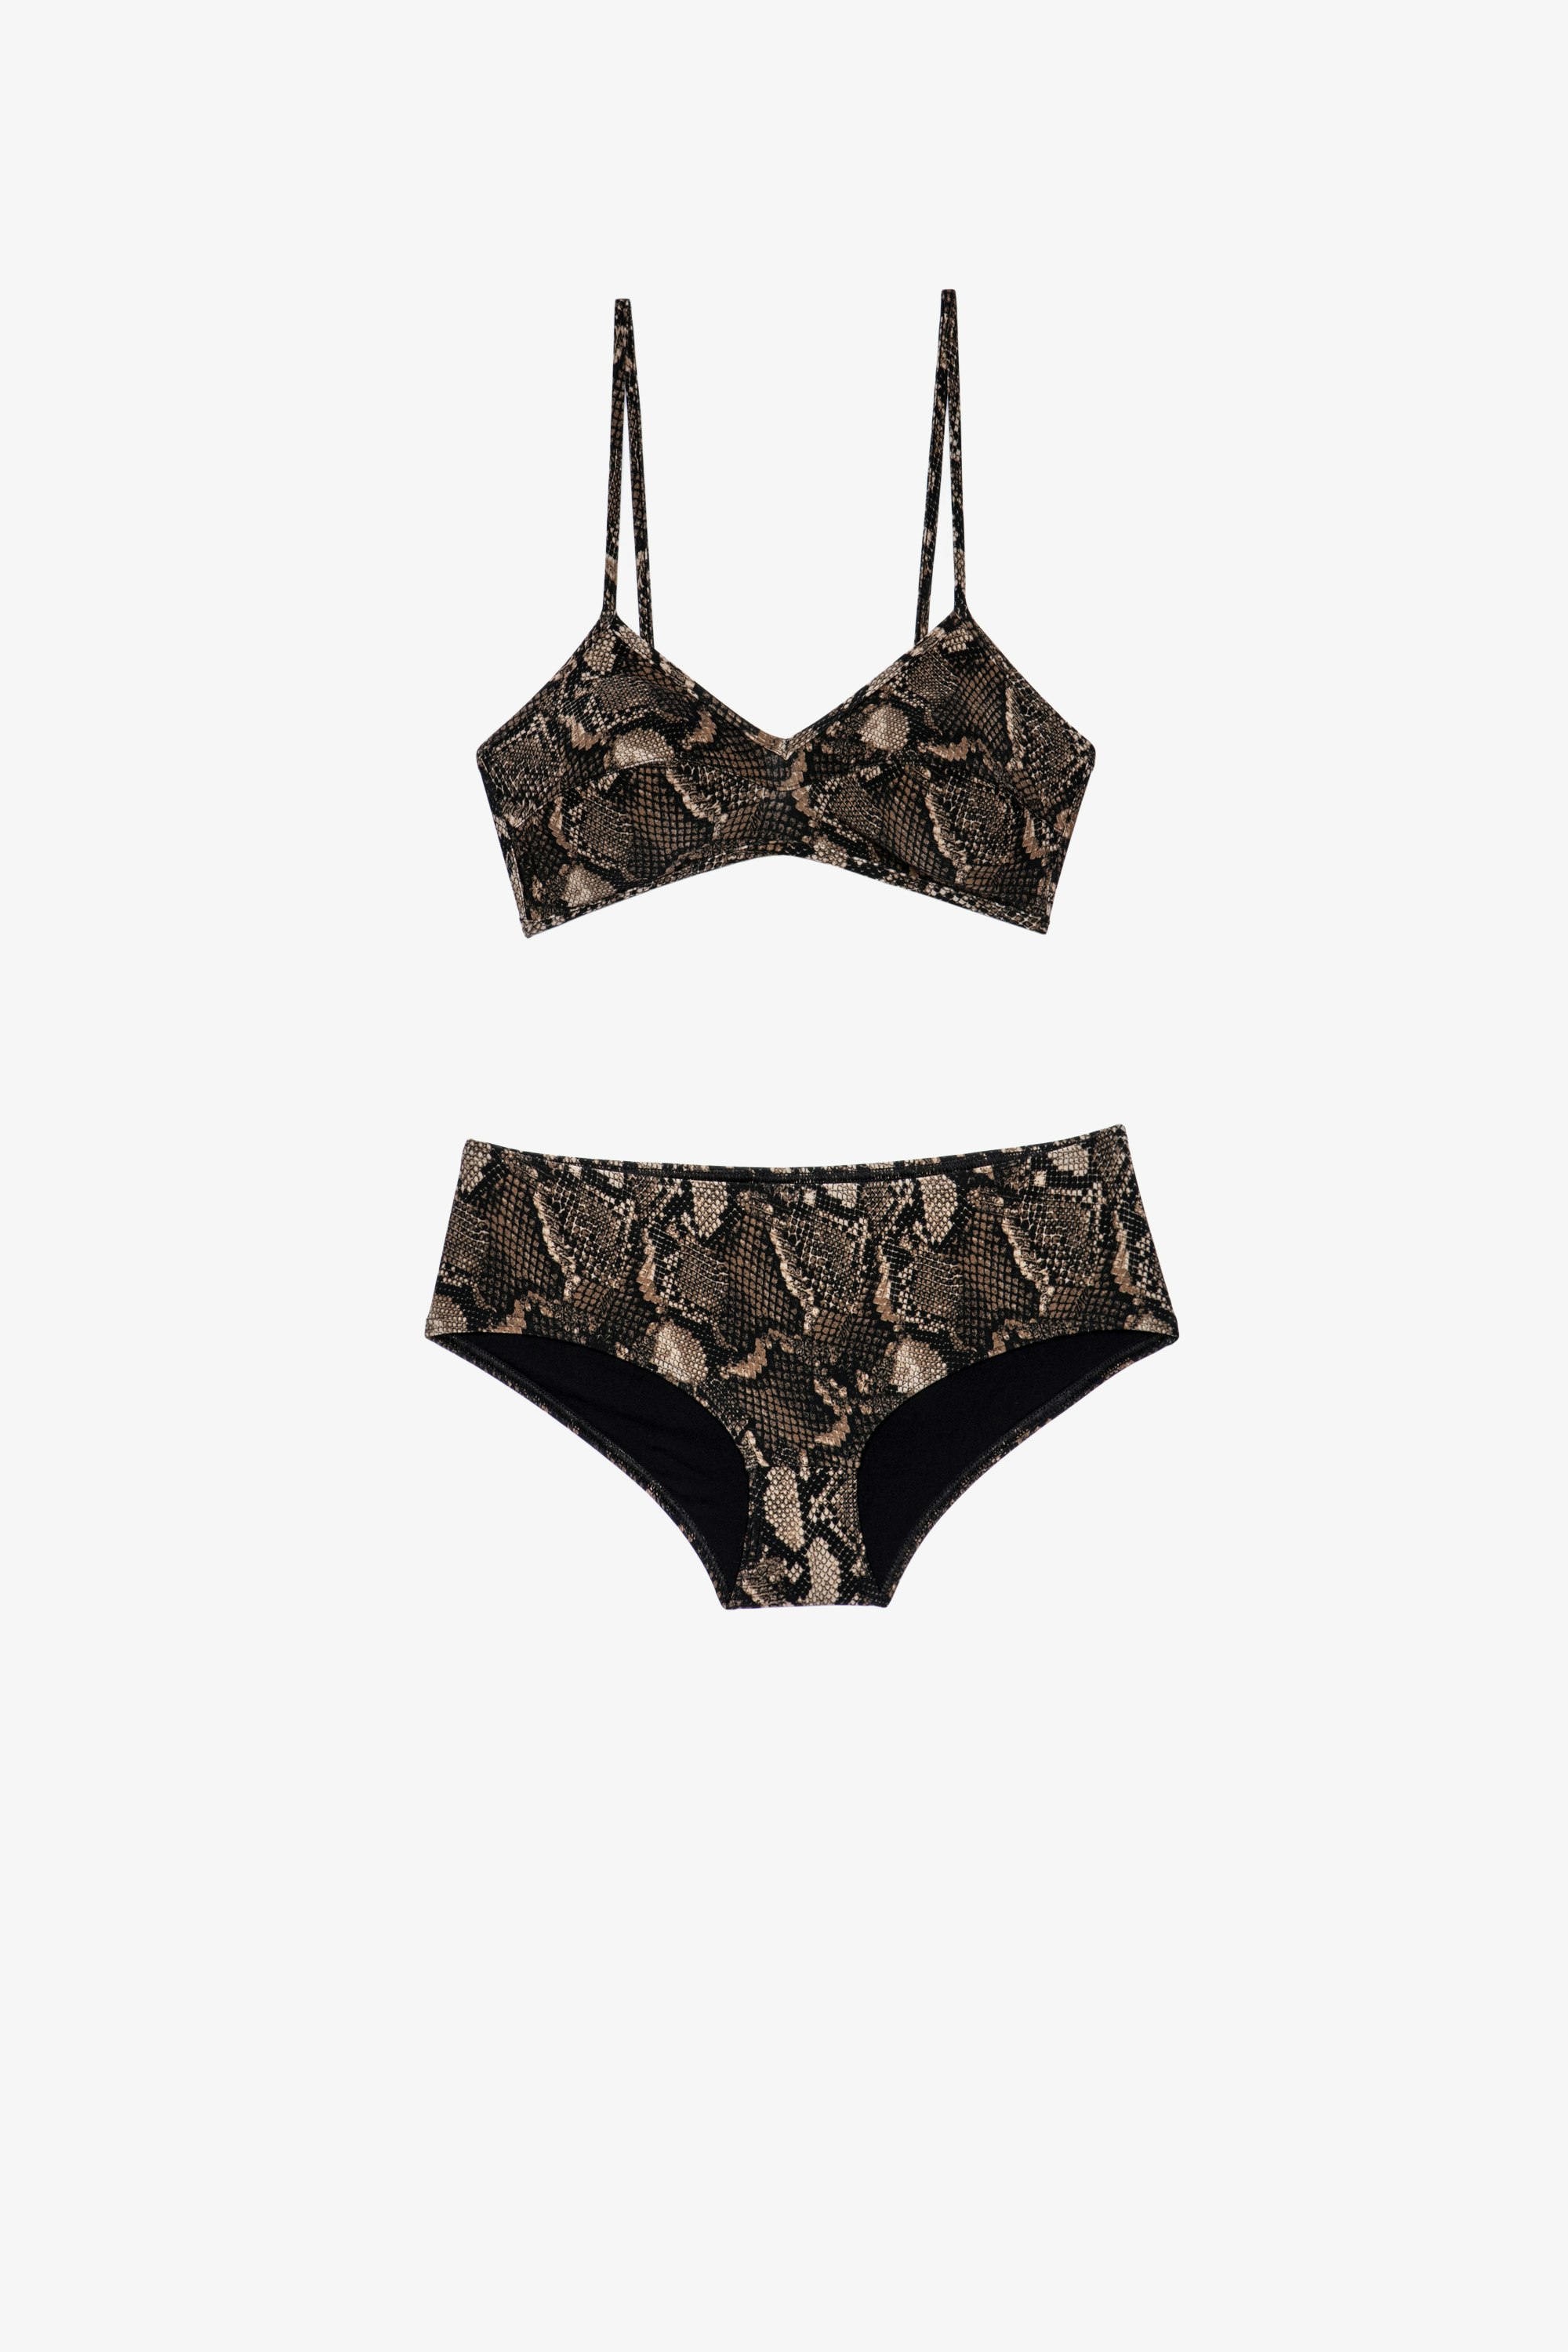 Snake print crop トップス 水着 2-piece women's snake print crop top swimsuit in brown